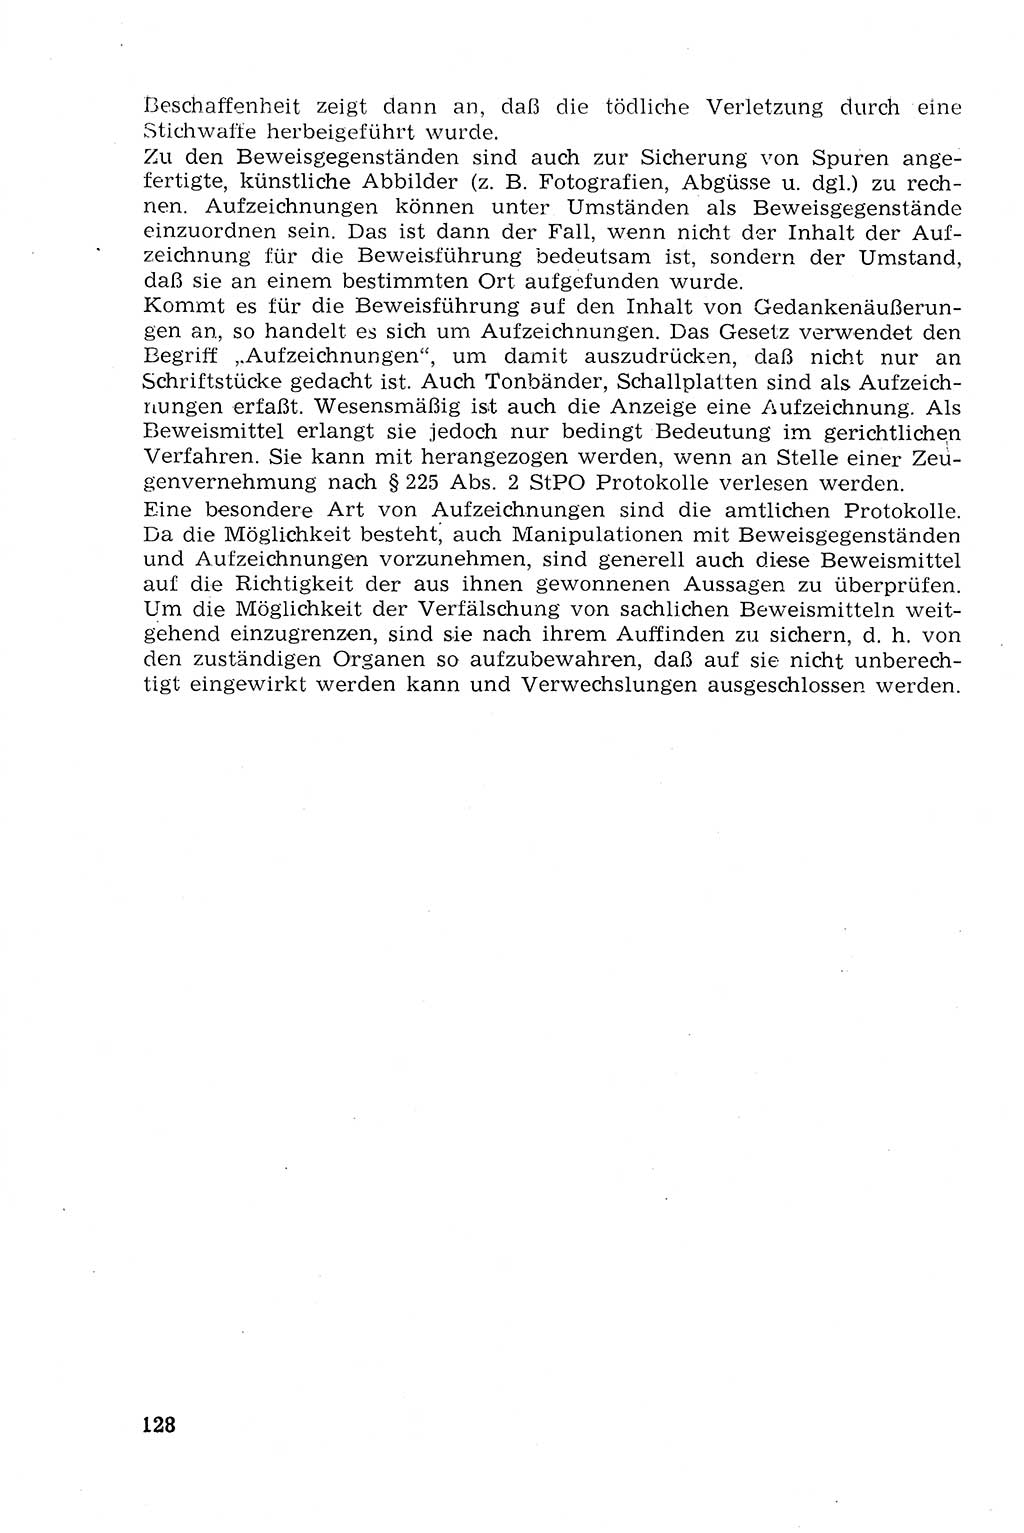 Strafprozeßrecht der DDR (Deutsche Demokratische Republik), Lehrmaterial 1969, Seite 128 (Strafprozeßr. DDR Lehrmat. 1969, S. 128)